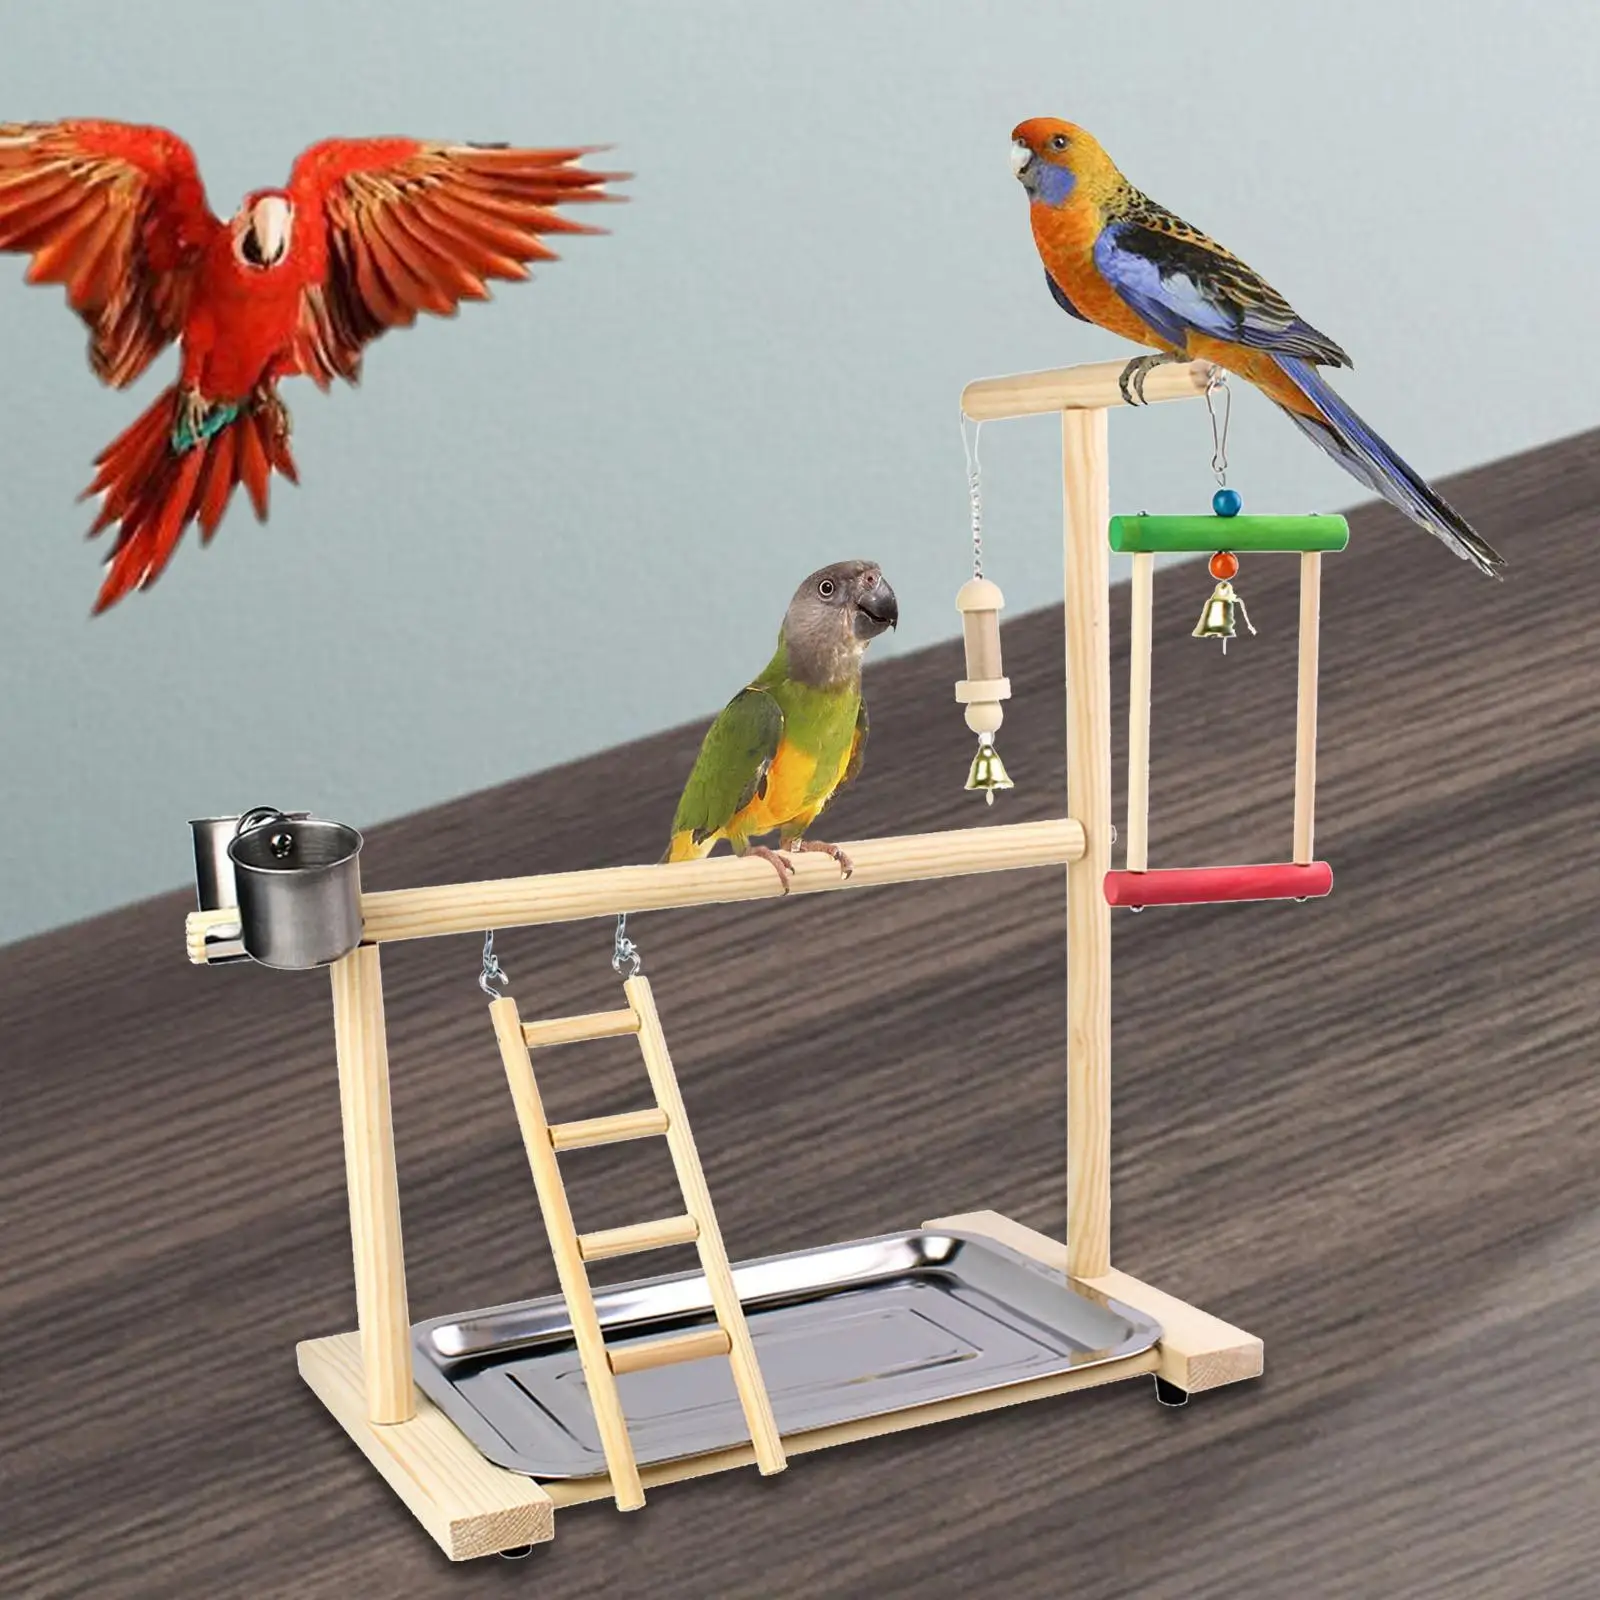 Ladder Bird Platform Perch Bird Playground Pet Parrot Playstand for Parakeet